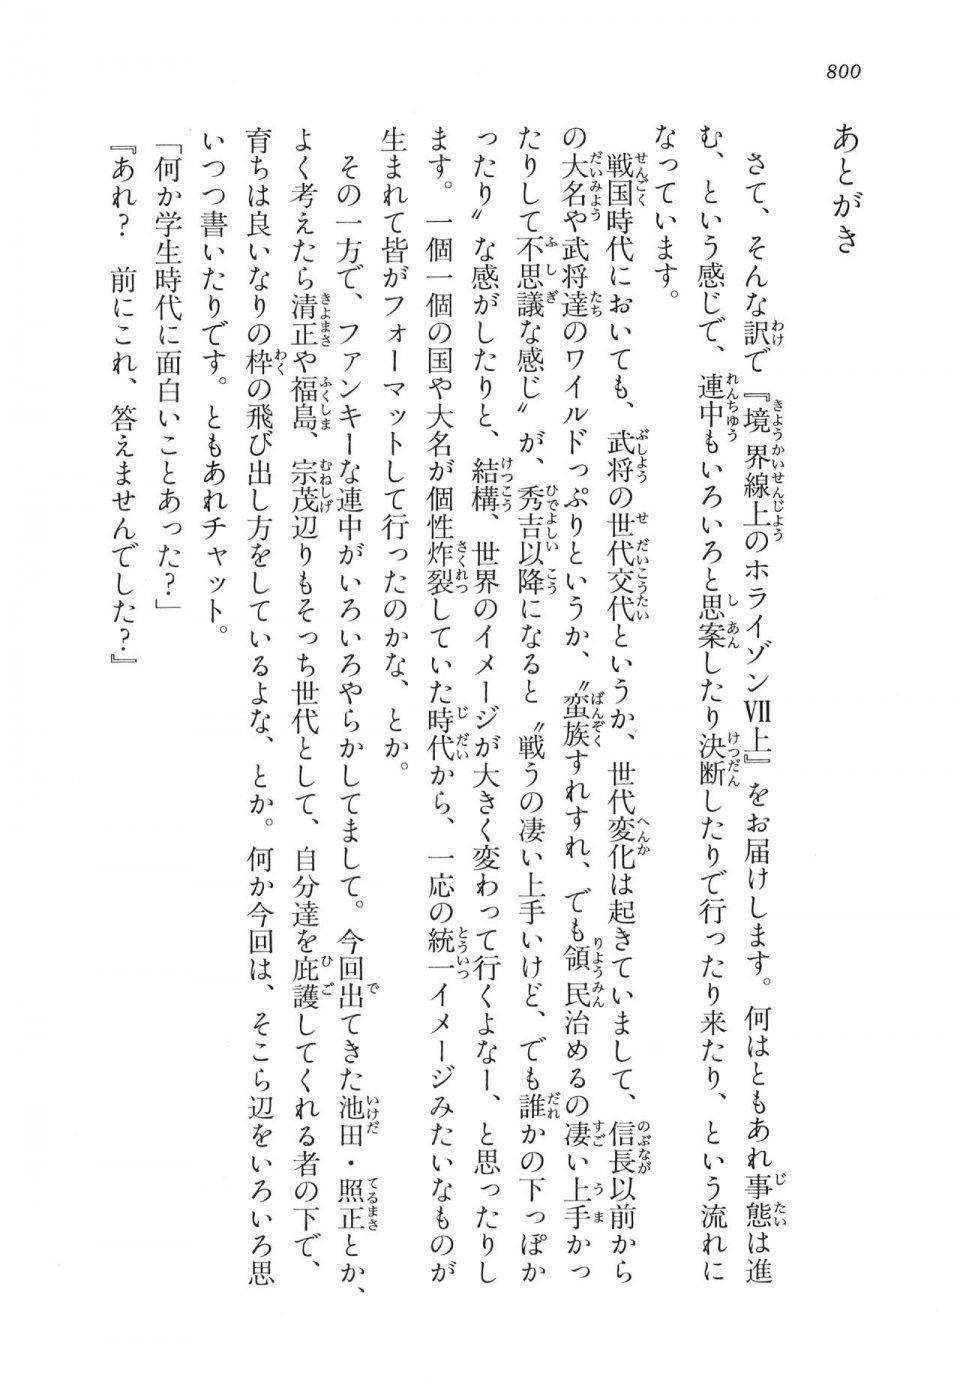 Kyoukai Senjou no Horizon LN Vol 16(7A) - Photo #800